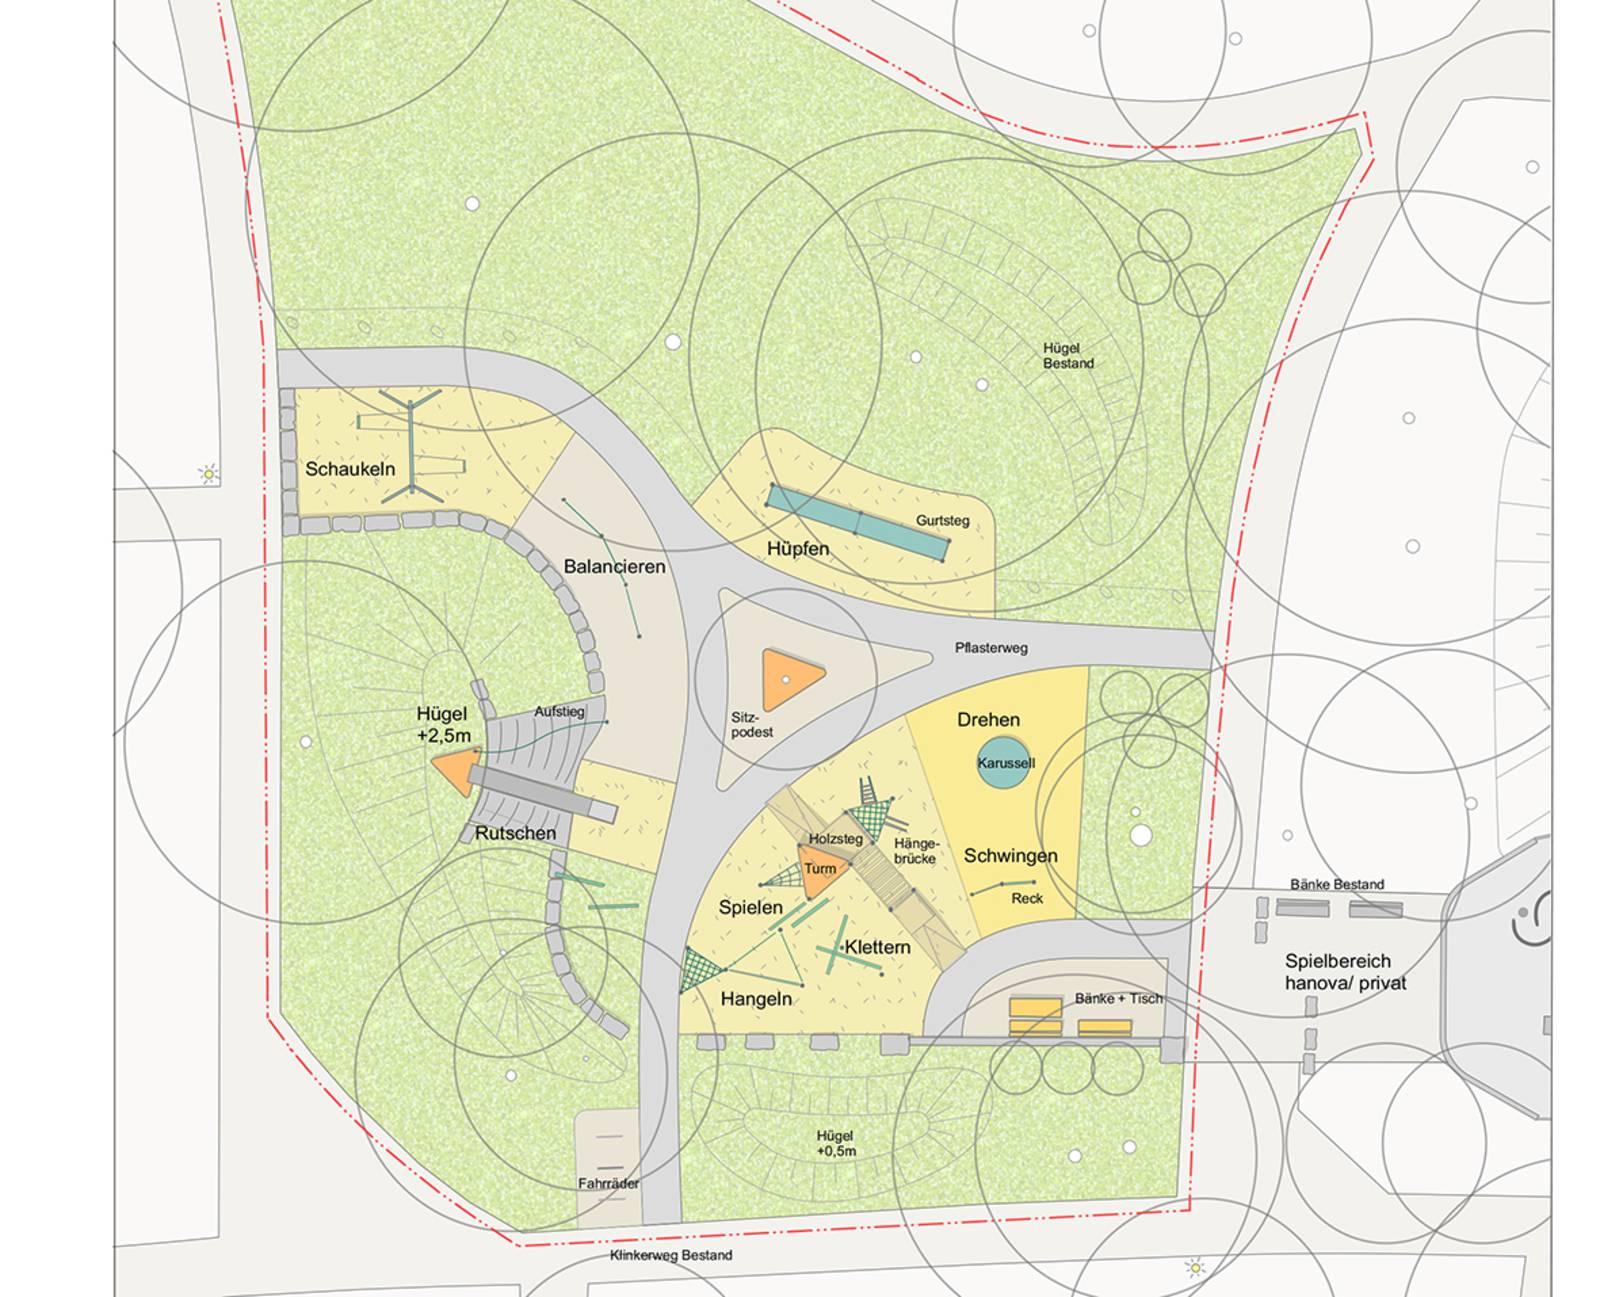 Bauplan des neuen Spielplatzes. Auf ihm sind alle Spielgeräte, Bänke und Flächen eingezeichnet.